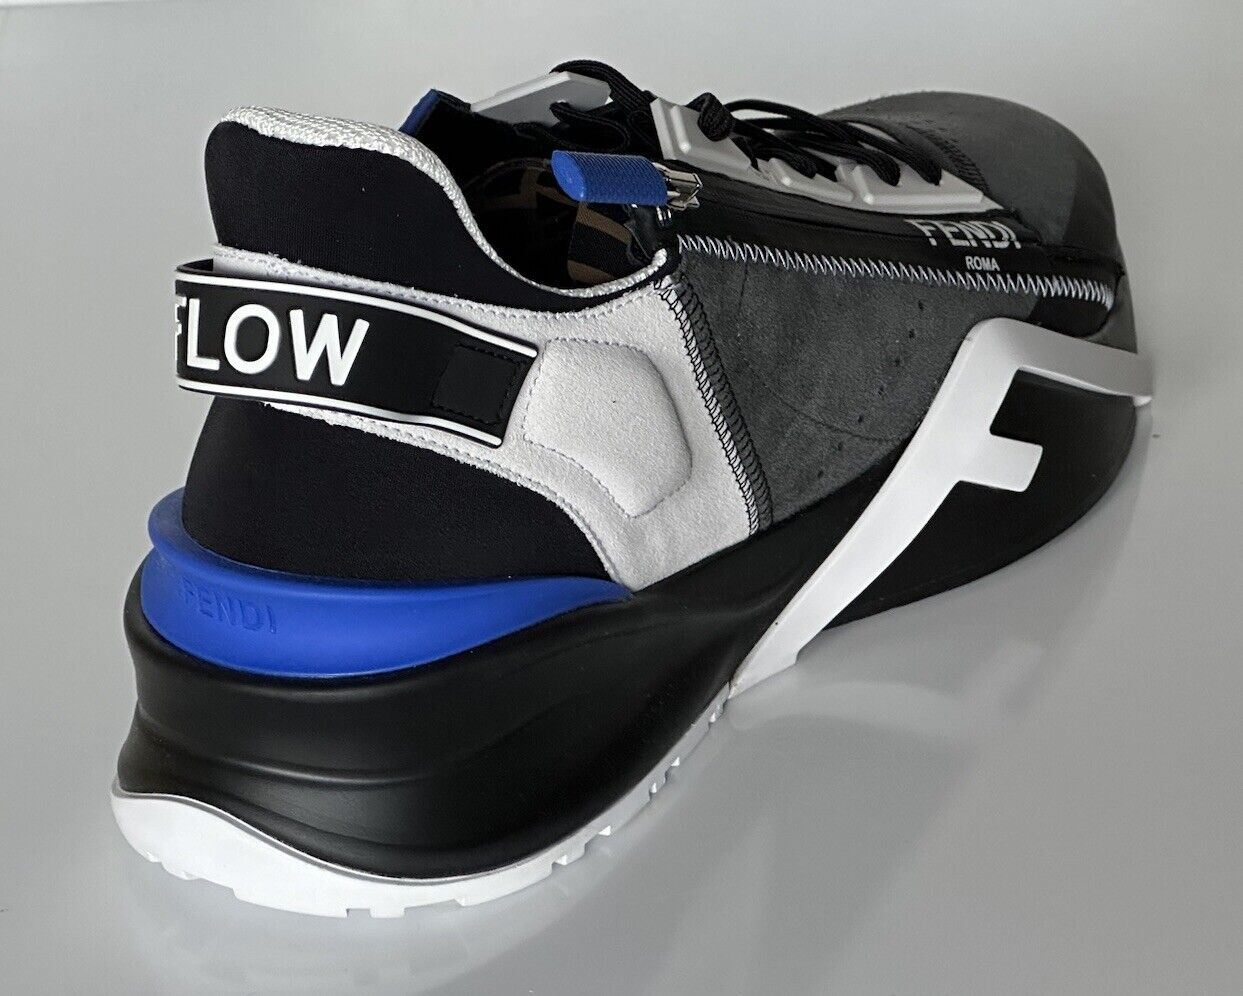 NIB 930 $ Fendi Flow Herren-Sneaker aus Leder/Stoff Schwarz/Blau 11 US (44) 7E1392